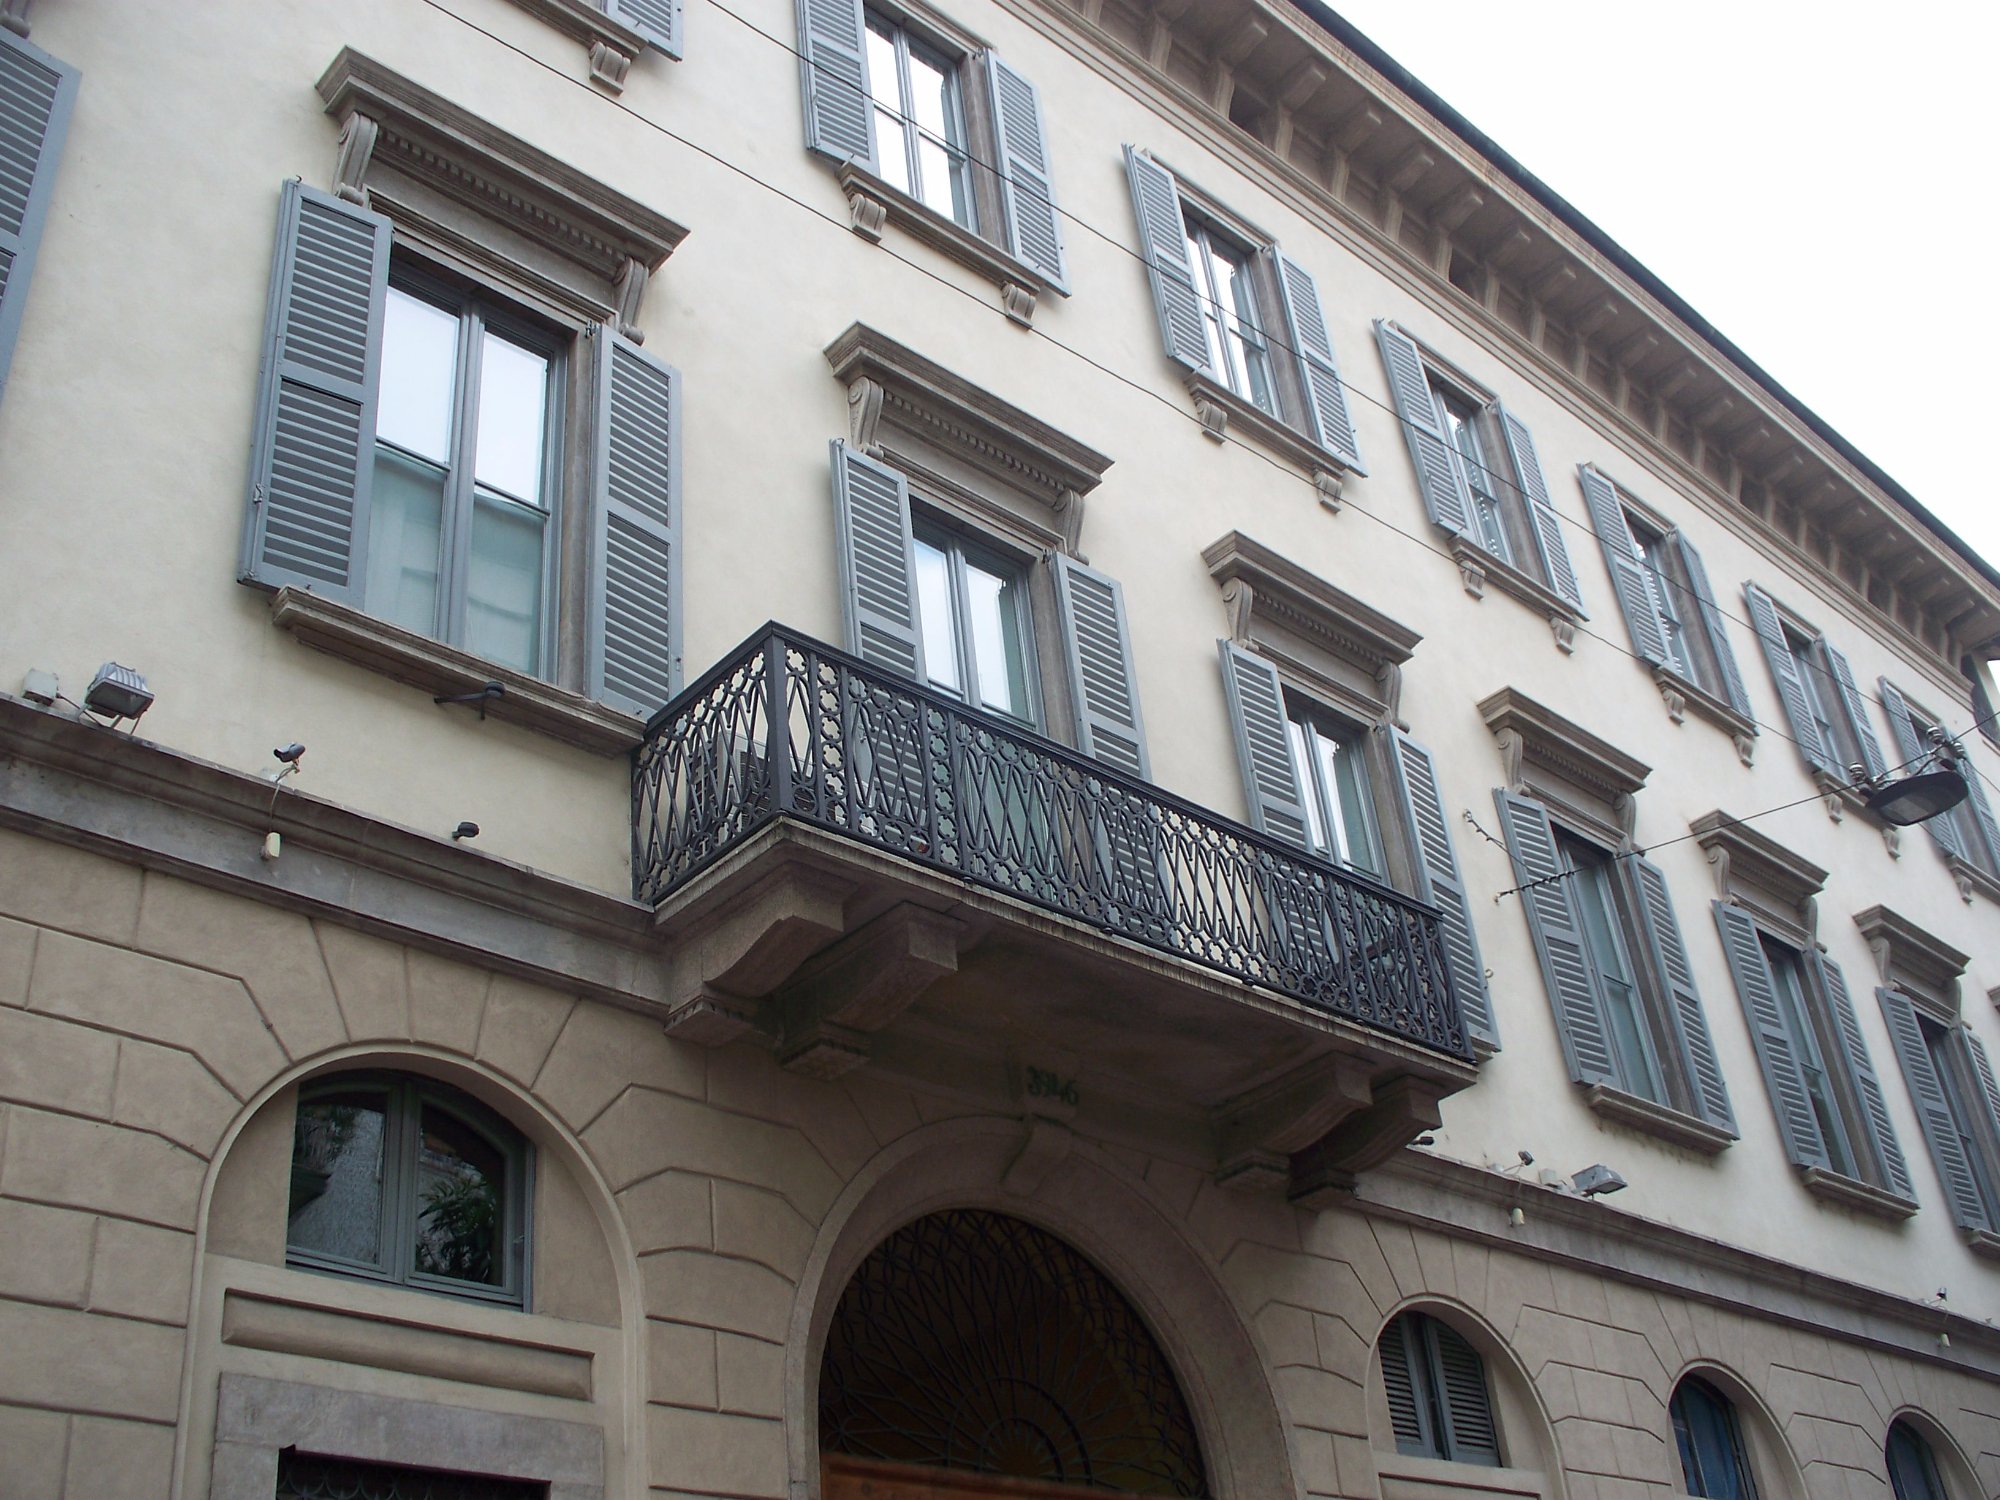 Palazzo Brivio Sforza